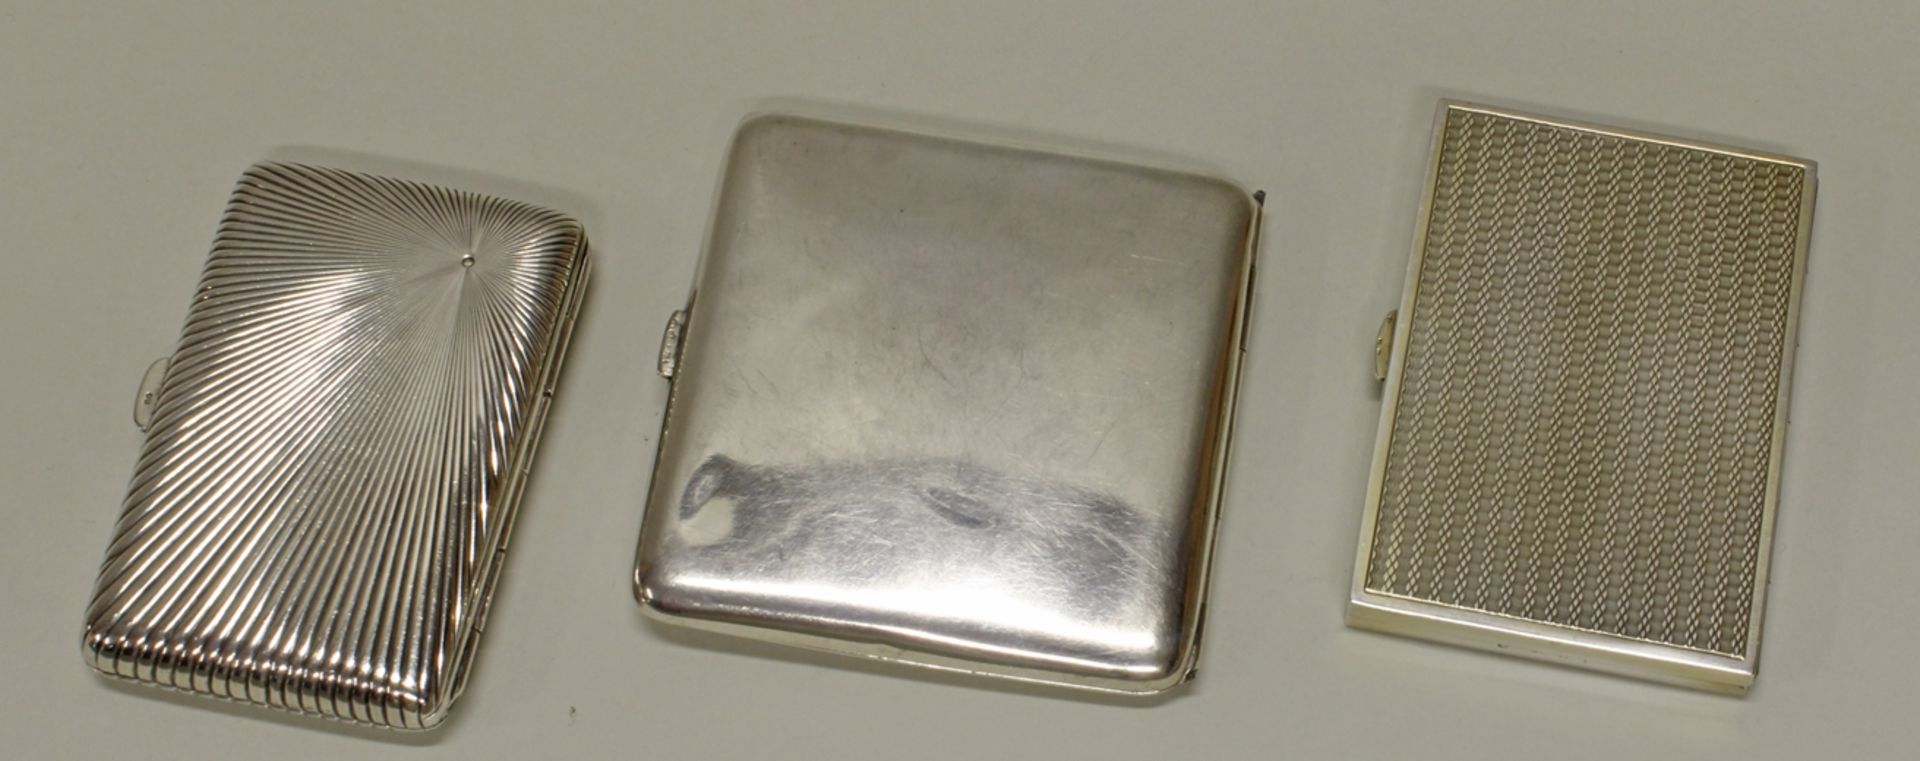 3 Zigarettenetuis, Silber 800/900, Österreich, deutsch, verschieden, 1x Monogramm, teils innen verg - Bild 2 aus 2